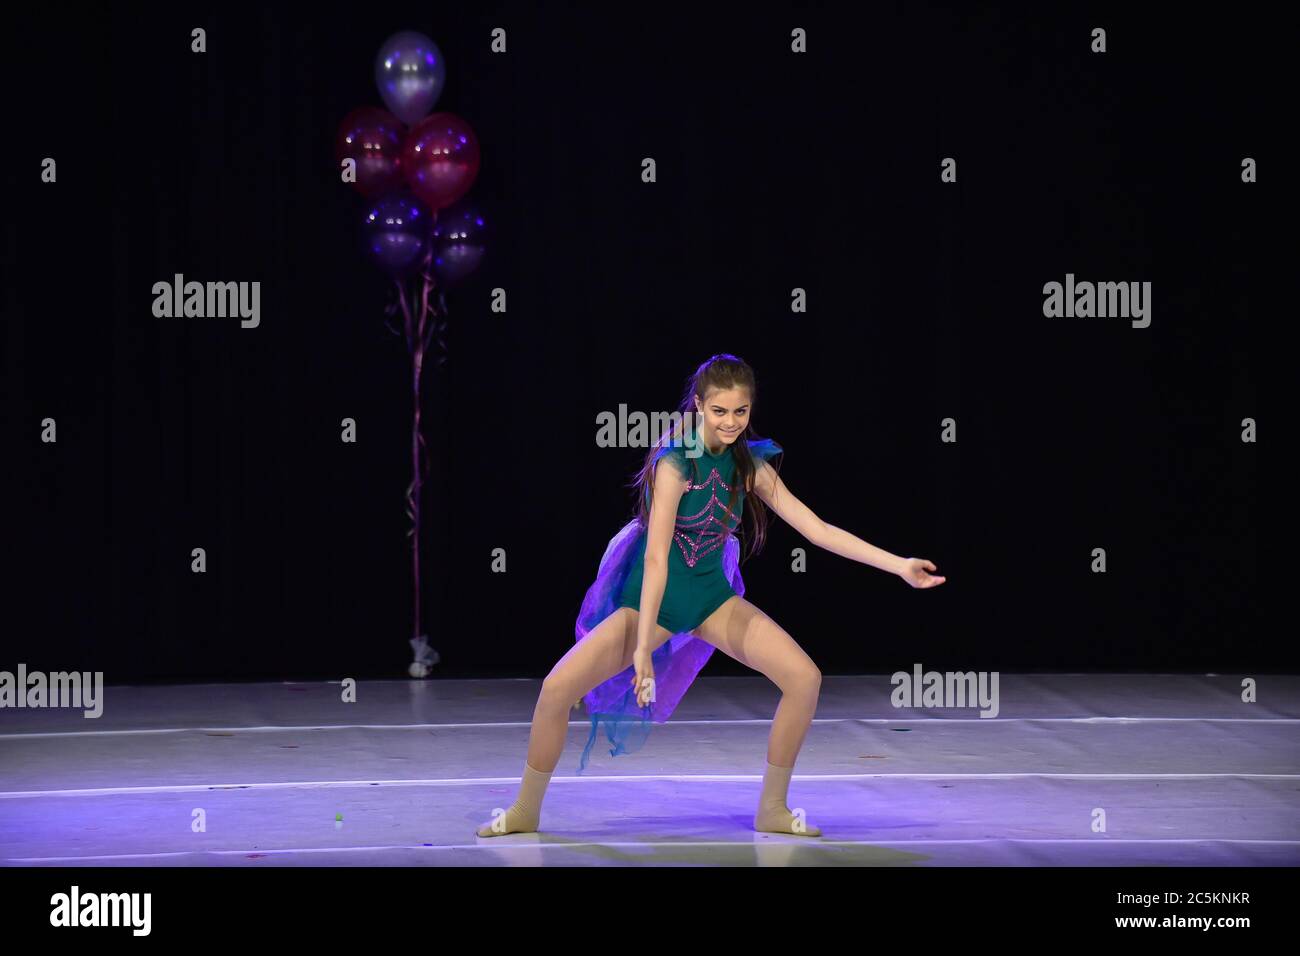 Giovane ragazza adolescente che esegue la danza moderna sul palco Foto Stock